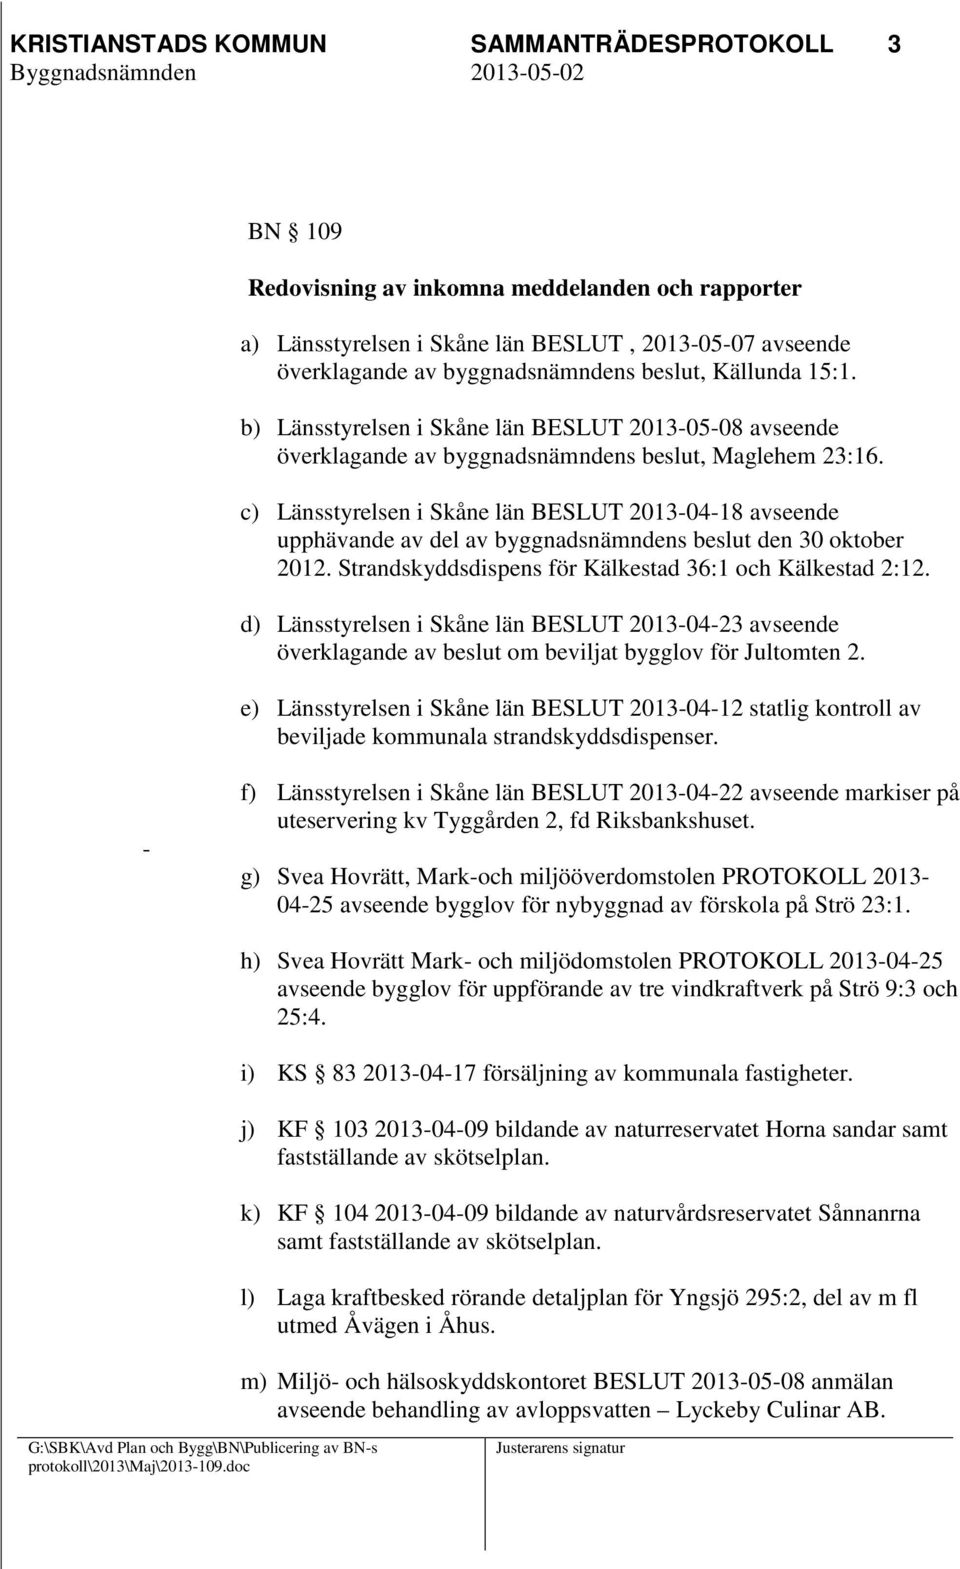 c) Länsstyrelsen i Skåne län BESLUT 2013-04-18 avseende upphävande av del av byggnadsnämndens beslut den 30 oktober 2012. Strandskyddsdispens för Kälkestad 36:1 och Kälkestad 2:12.